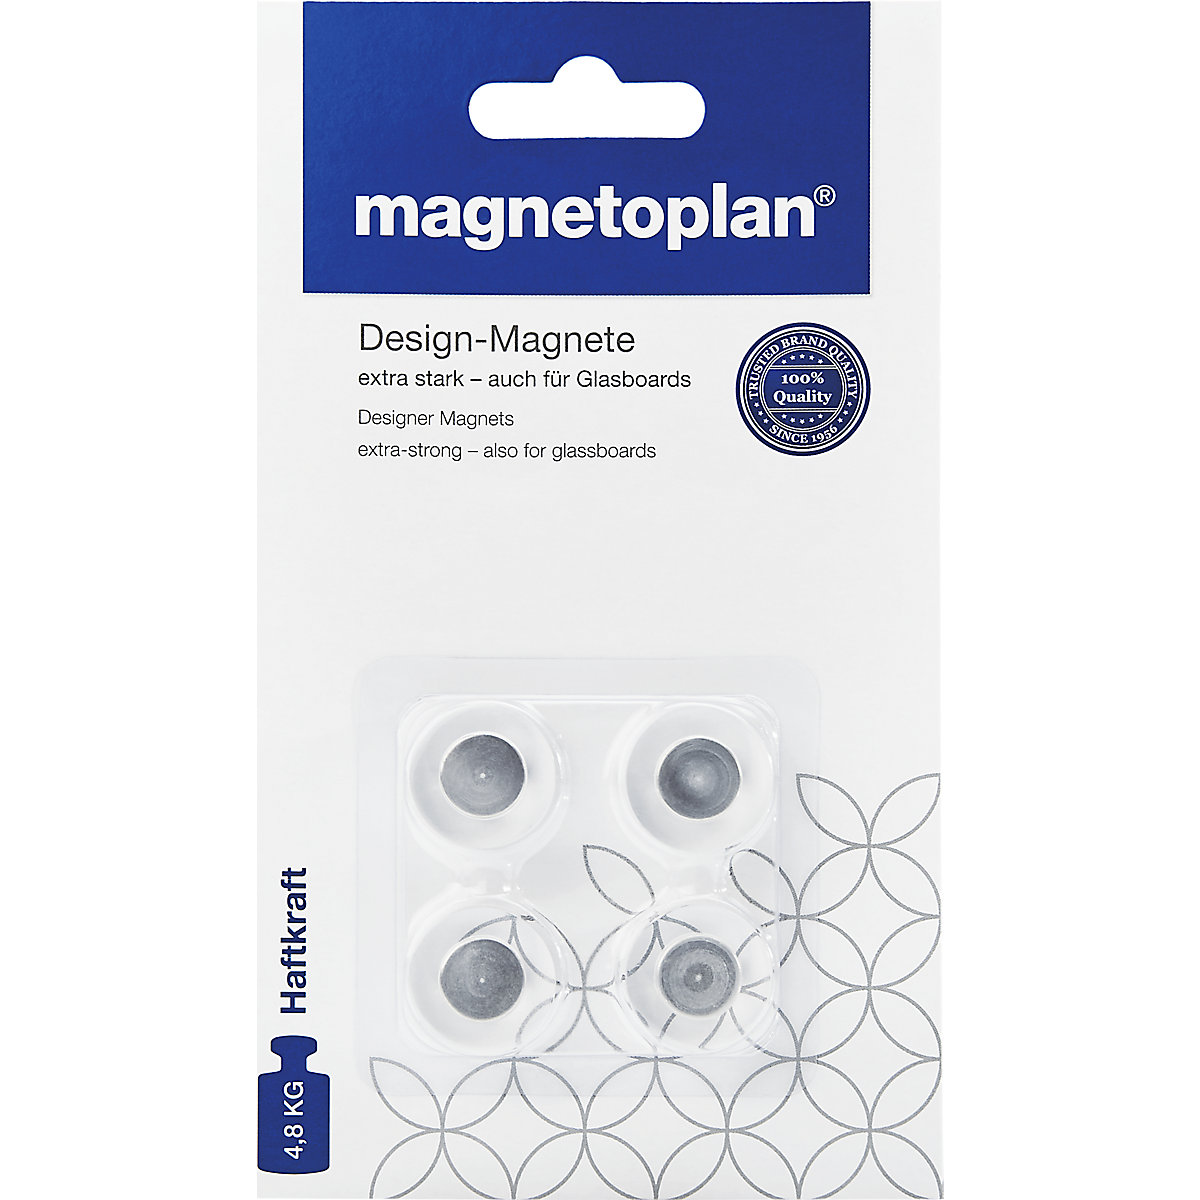 Designer magnet – magnetoplan